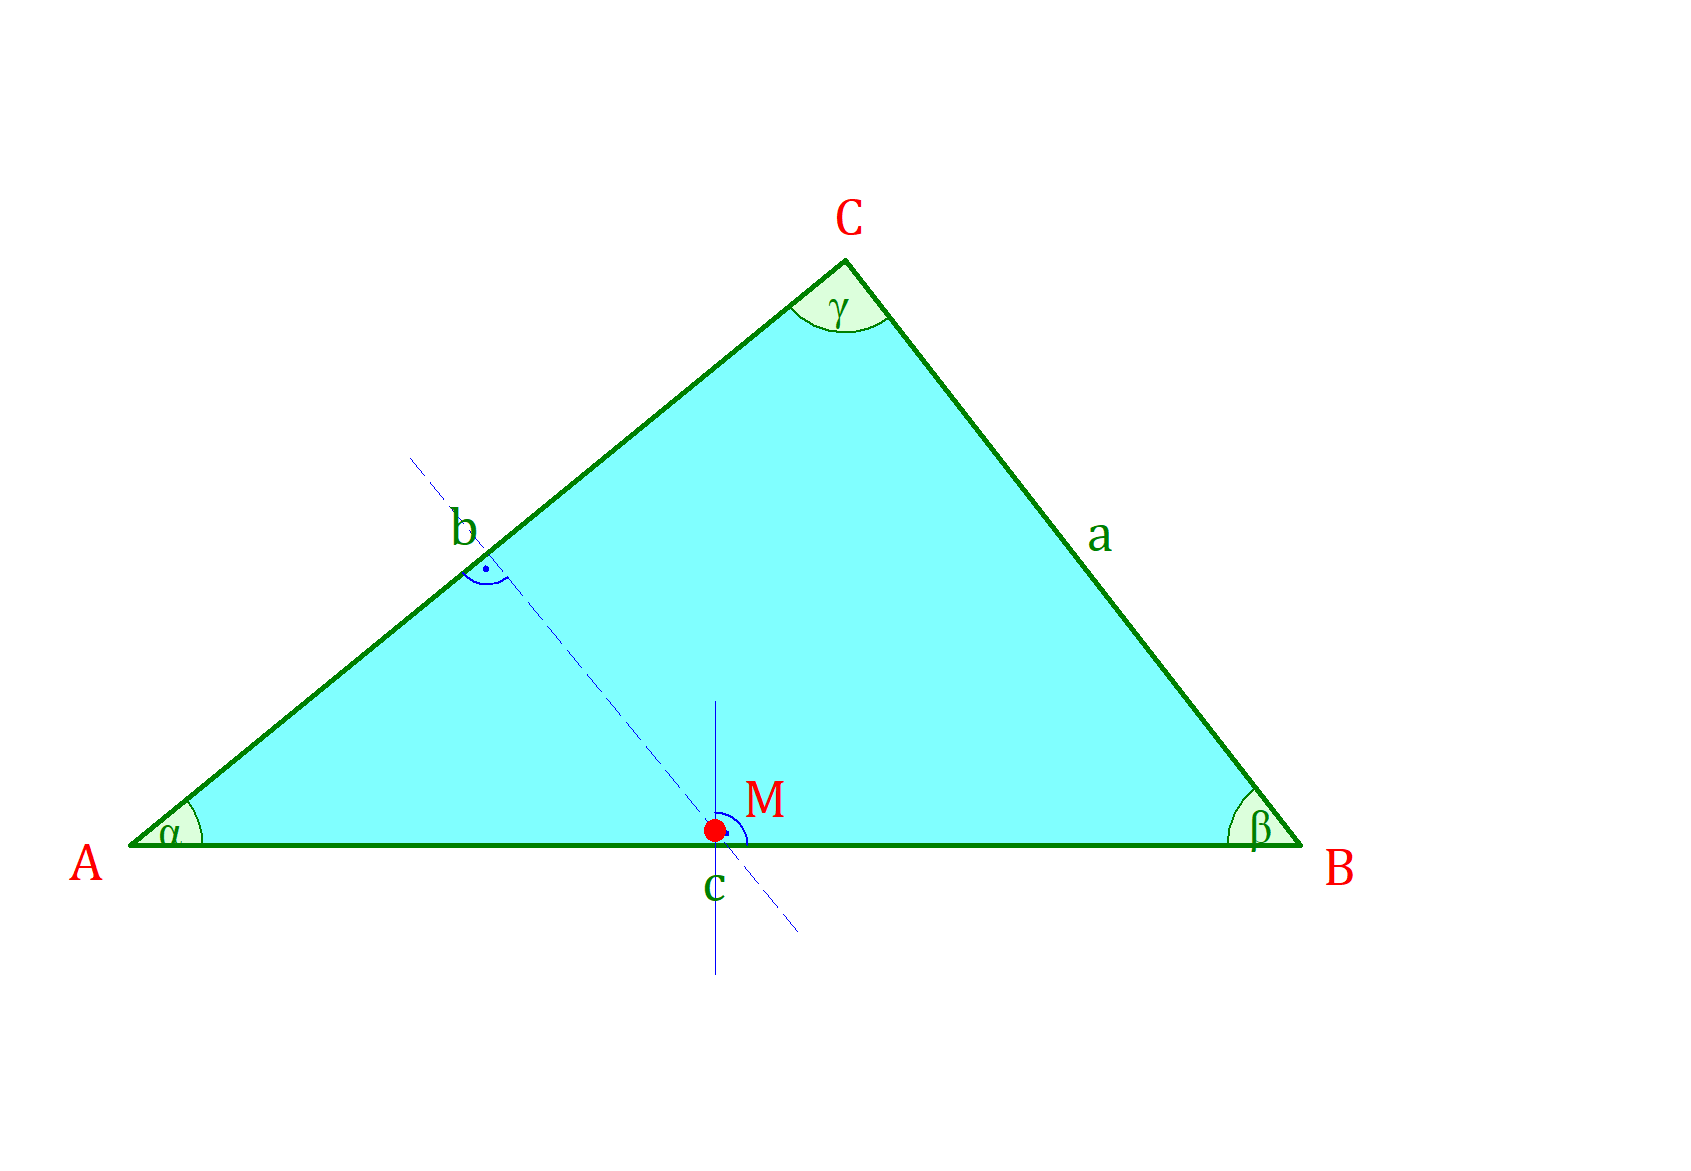 inkreis dreieck, umkreis dreieck, inkreis dreieck konstruieren, innenkreis dreieck, umkreis konstruieren, inkreis konstruieren, inkreis, inkreis eines dreieck, umkreismittelpunkt dreieck, umkreis eines dreiecks, umkreis dreieck konstruieren, umkreisradius dreieck, mittelsenkrechte umkreis, innenkreis dreieck konstruieren